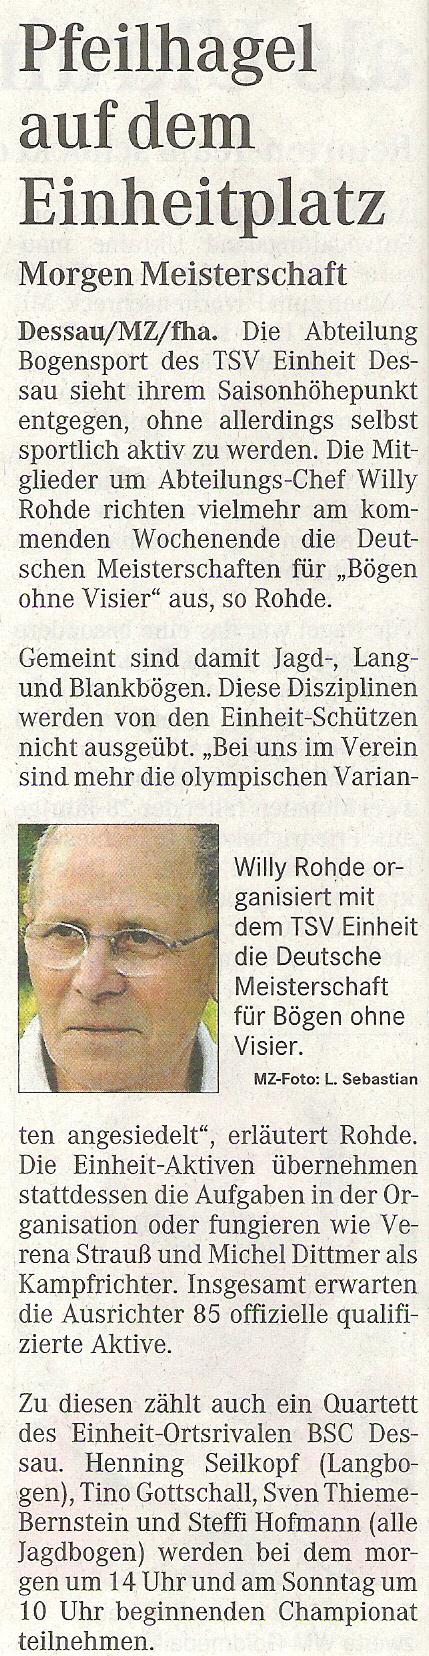 Ankündigung DM FITA Bögen ohne Visier in Dessau – Mitteldeutsche Zeitung vom 01.09.2006